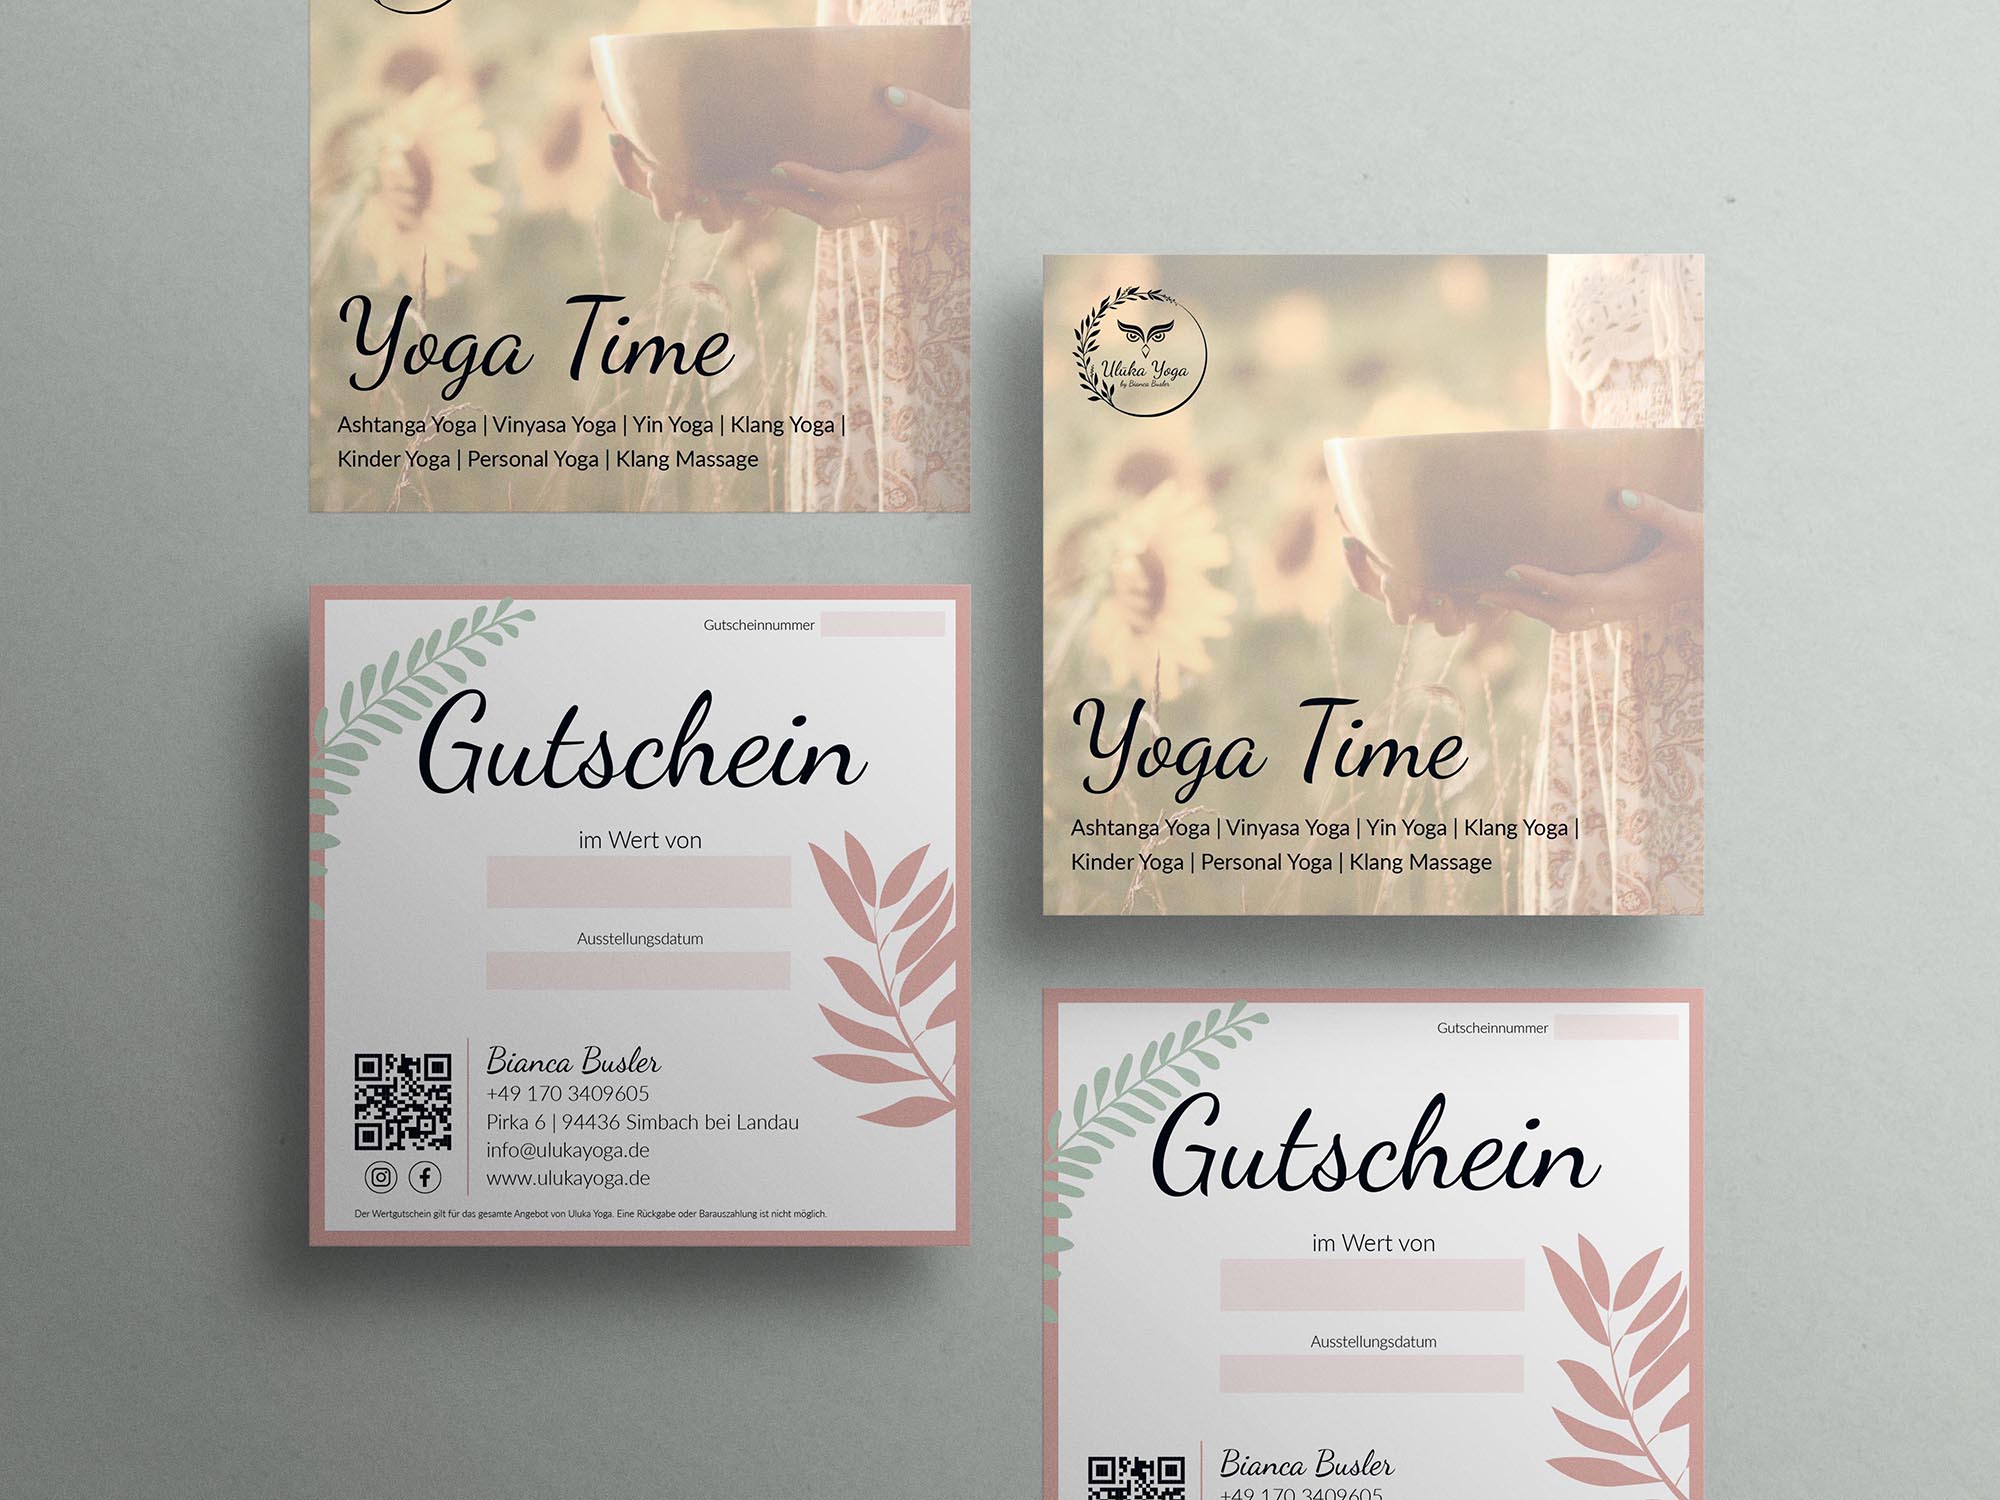 Uluka Yoga Gutscheine - Grafikdesign unterschiedlicher Elemente